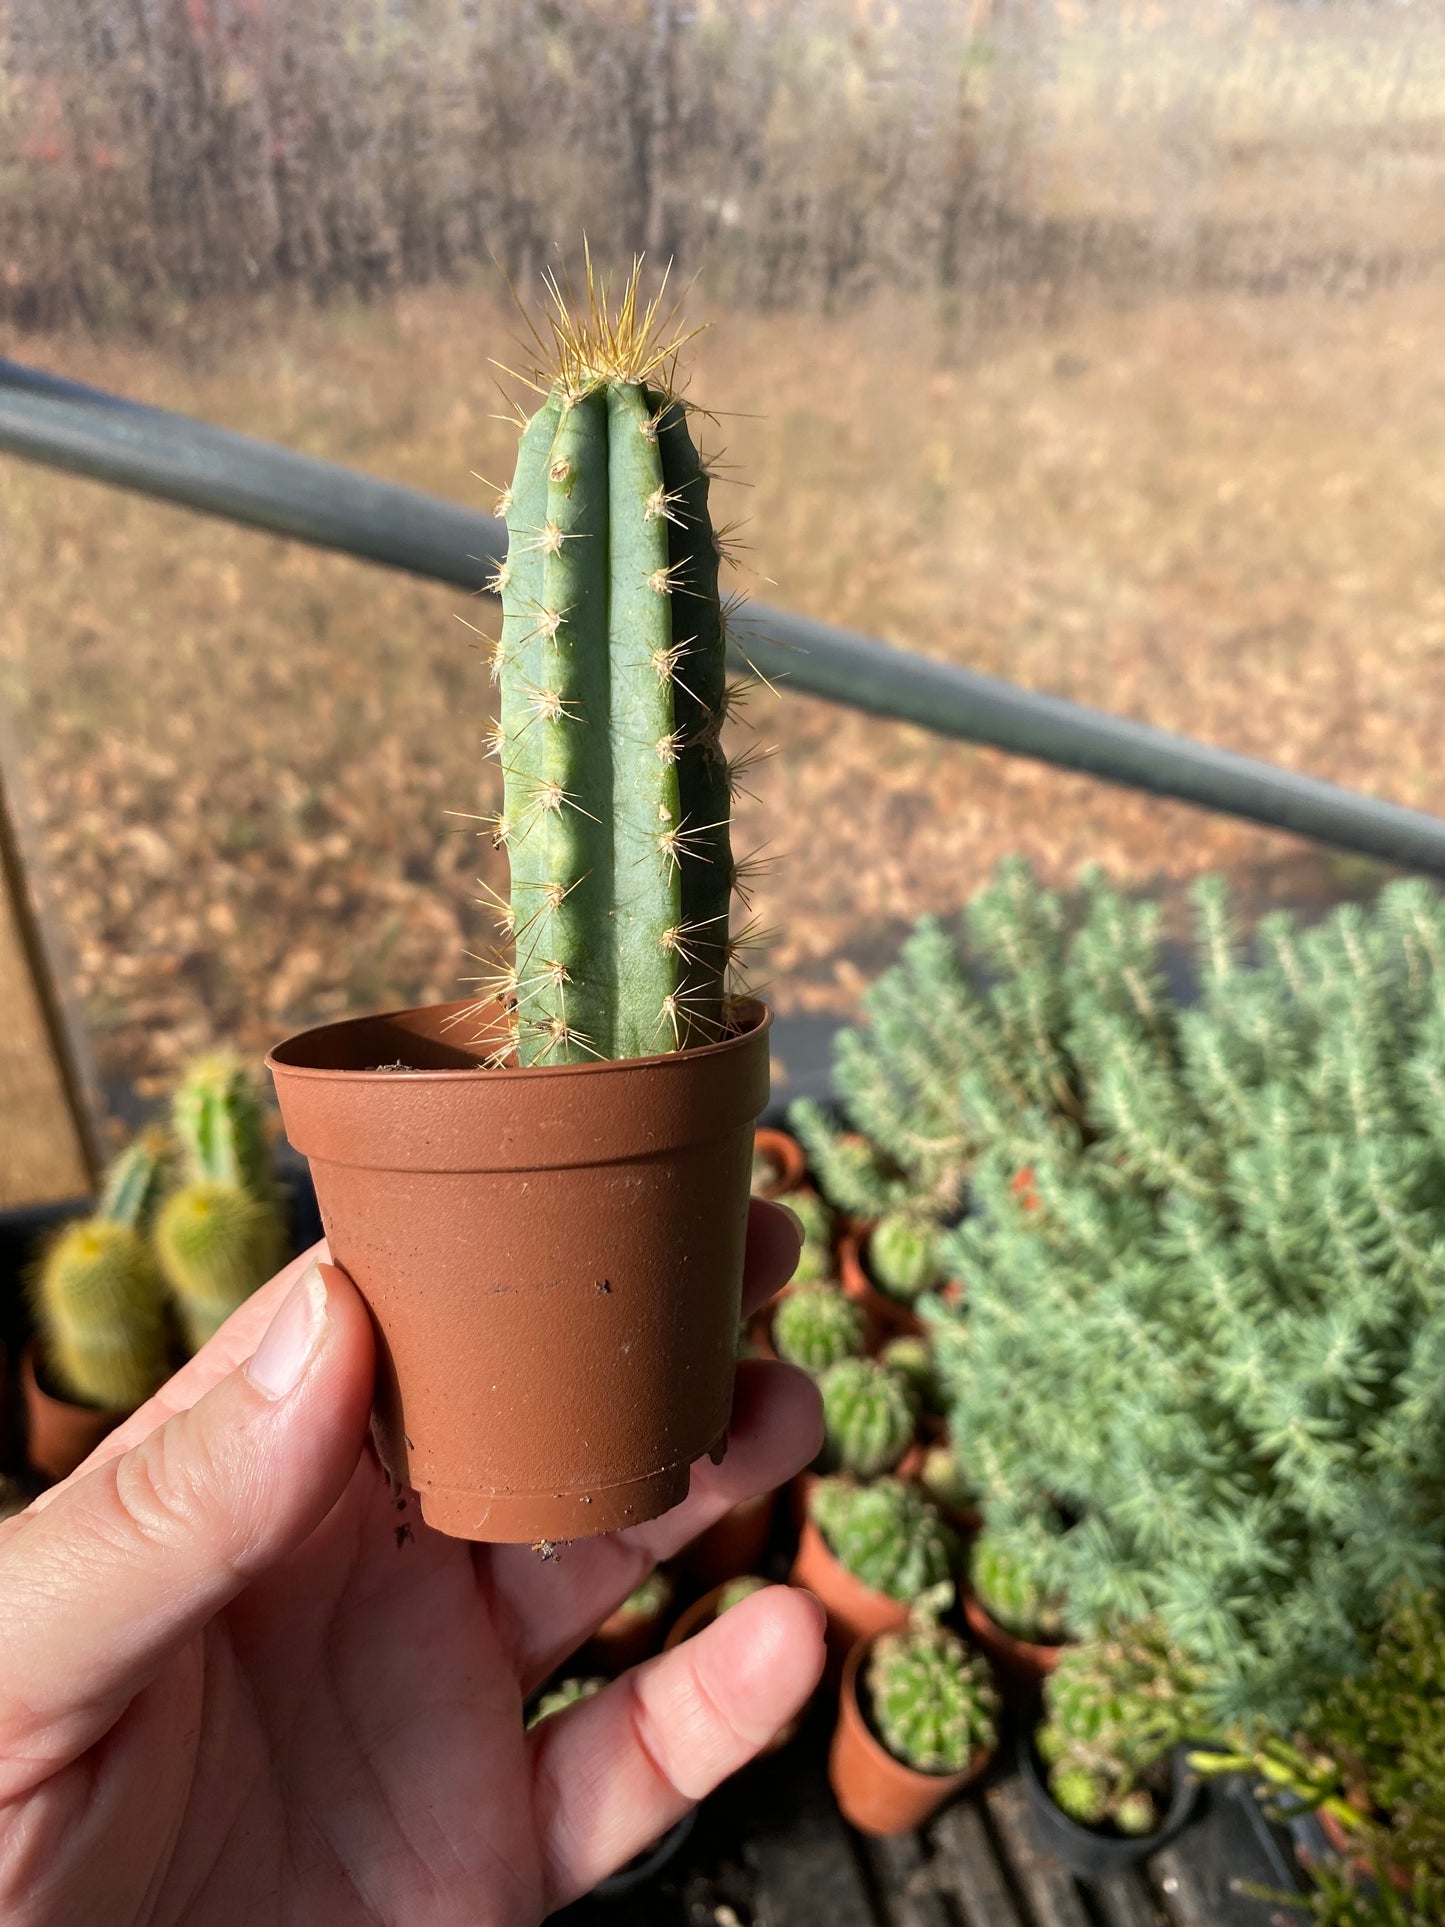 Cactus San Pedro Echinopsis Pachanoi 2" Pot Live Plant